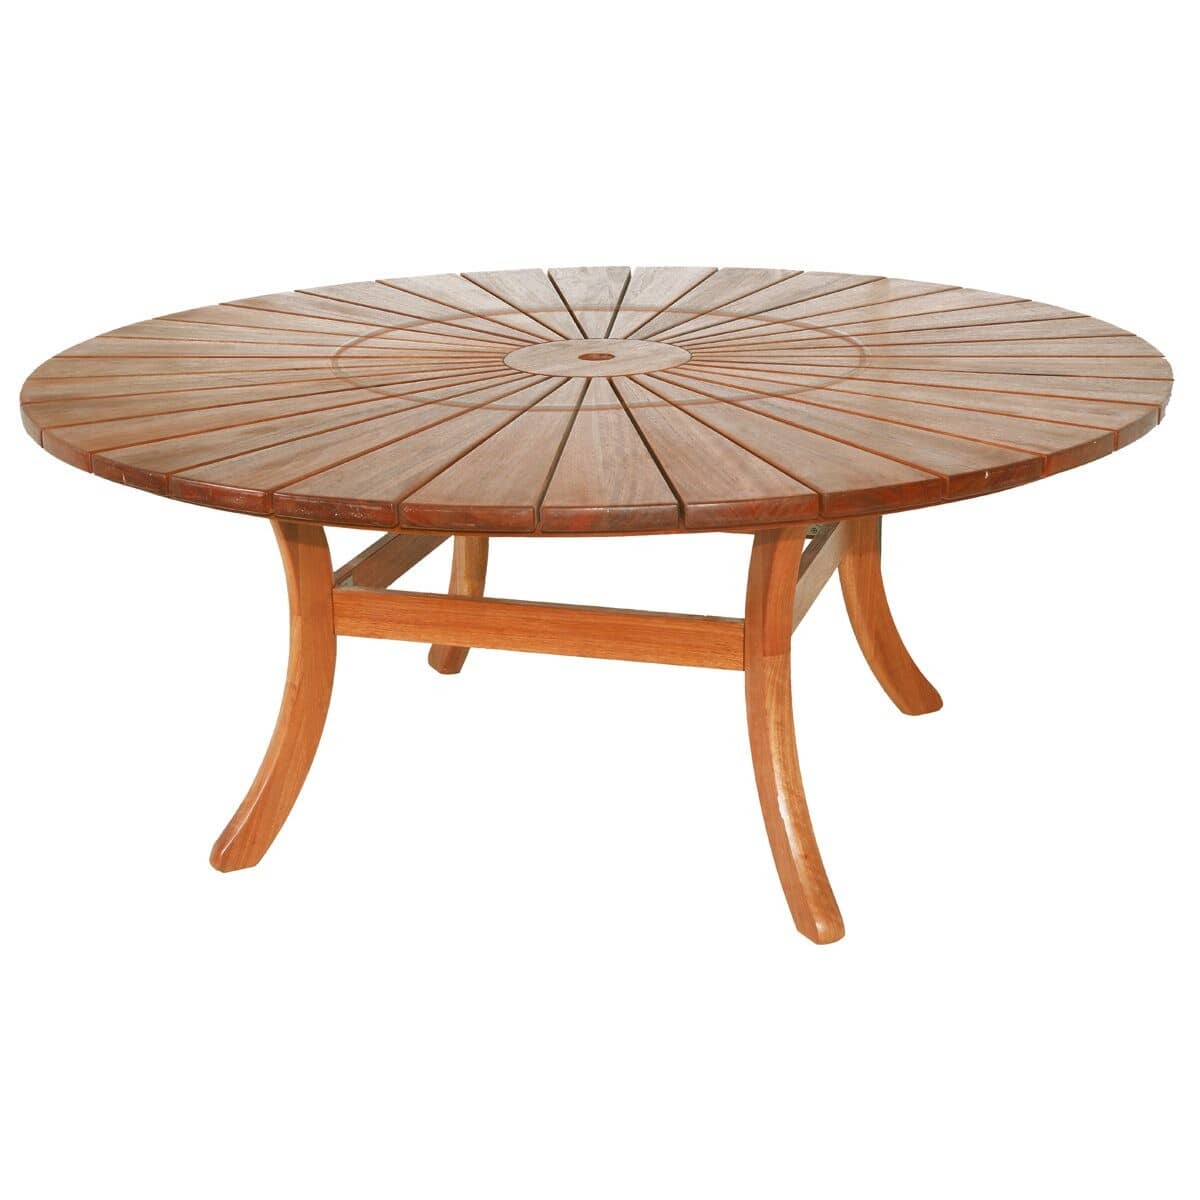 Cornis Sun Table 1.8m - (329B) - Garden Furniture World